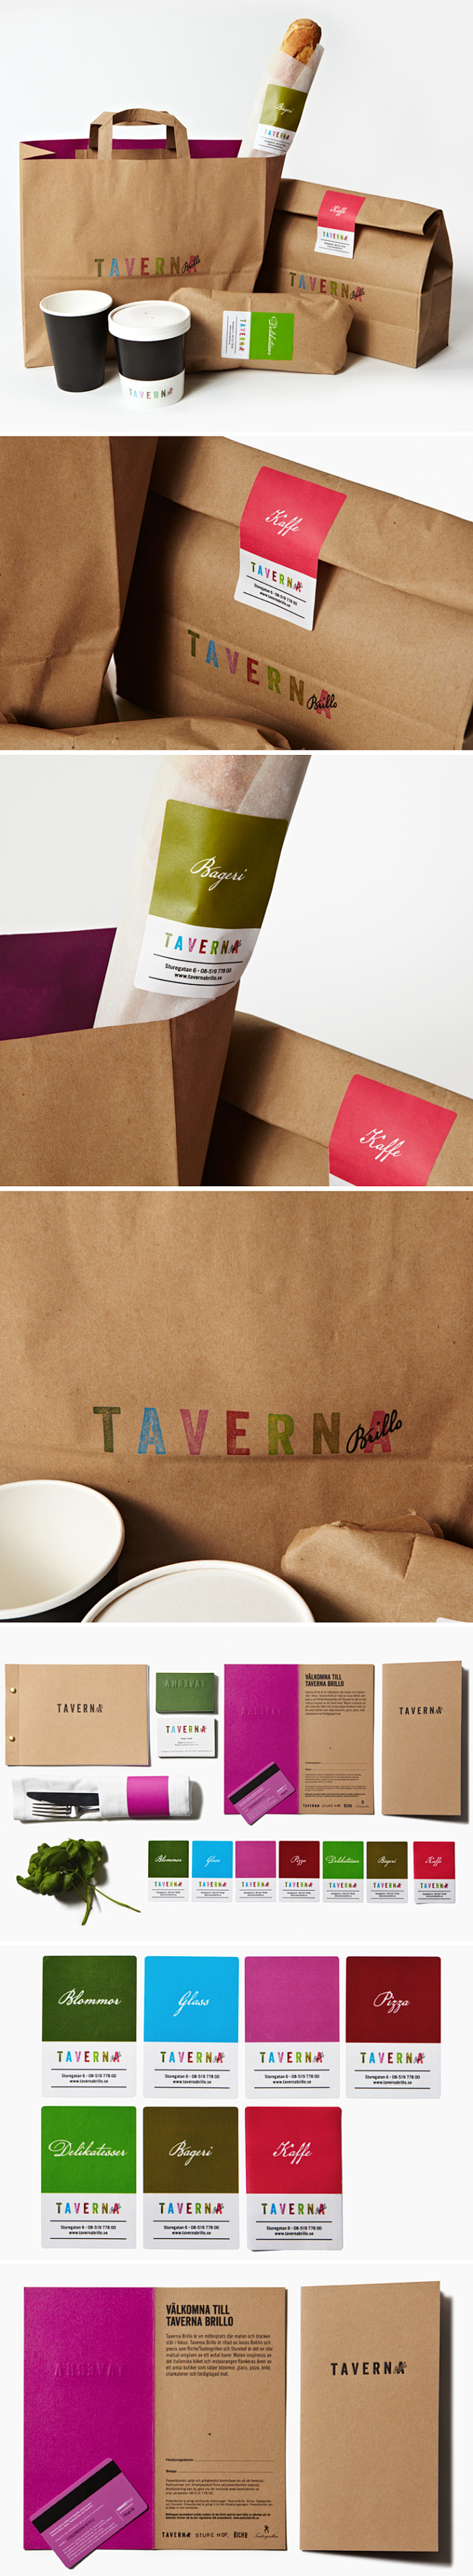 Taverna包装设计